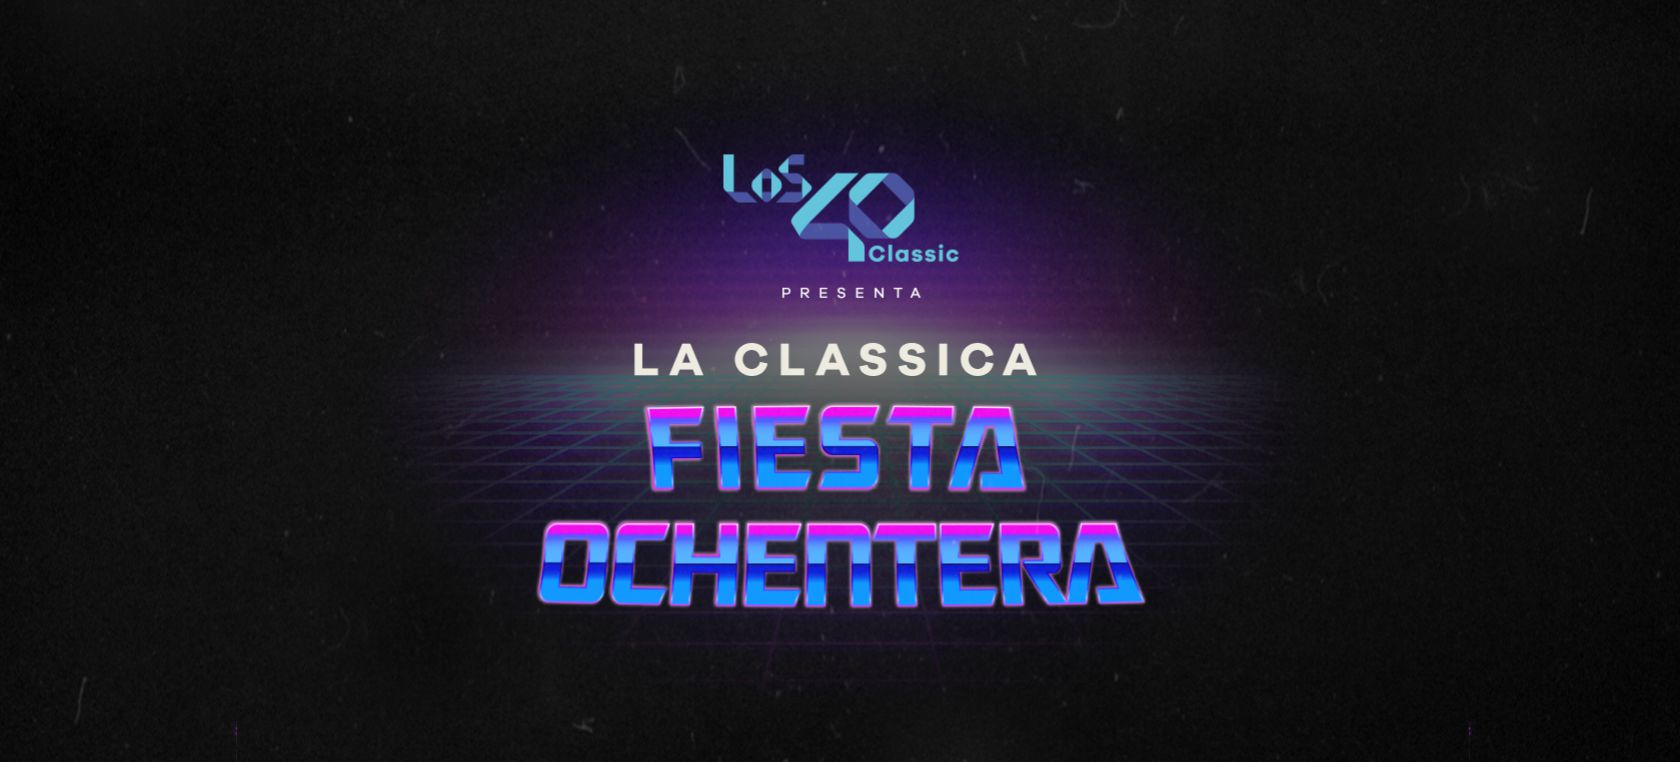 LOS40 Classic vuelve a Medias Puri con La Clásica Fiesta Ochentera